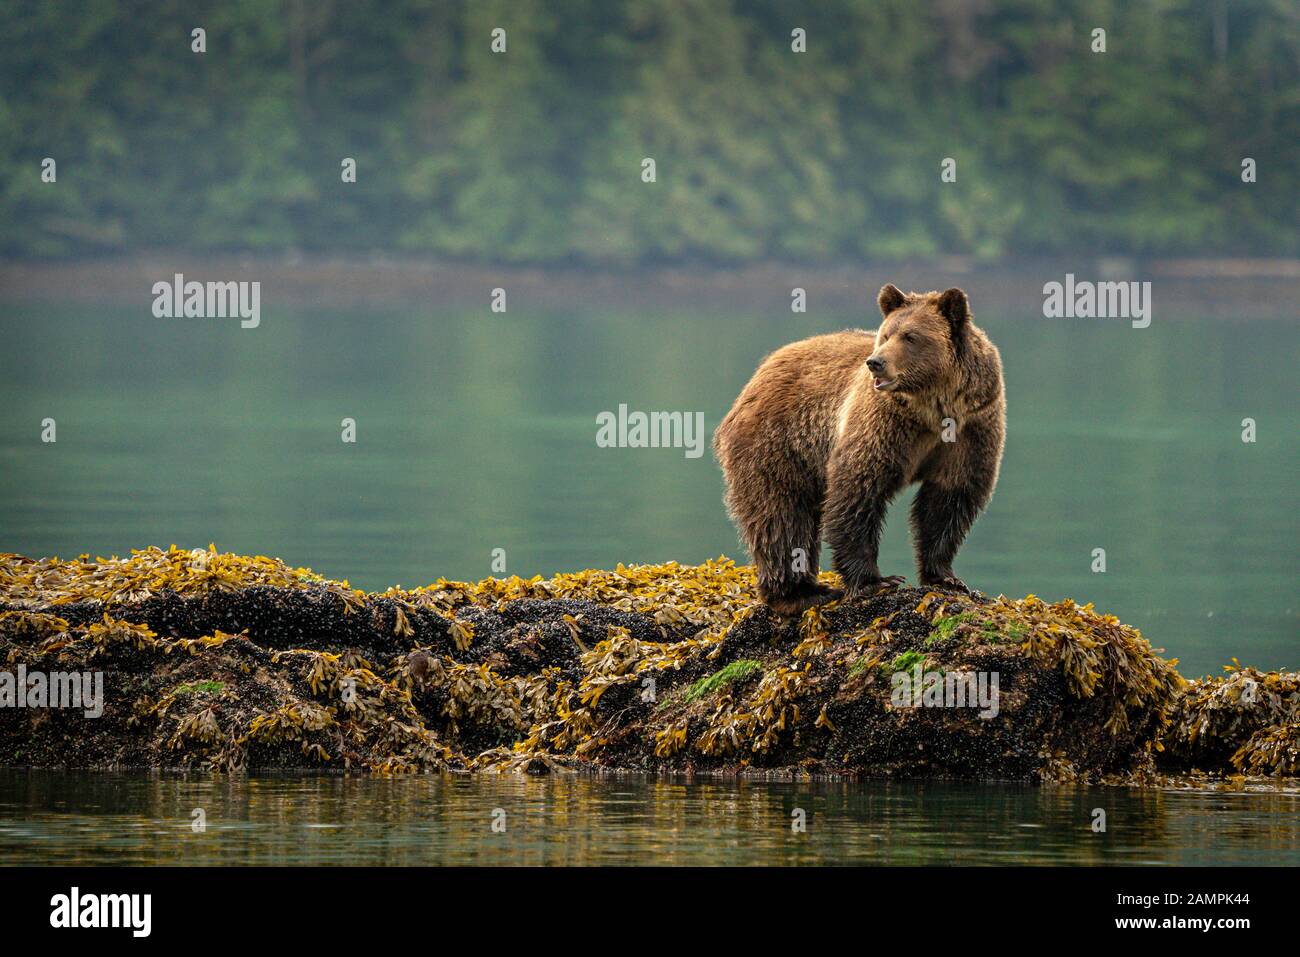 El oso Grizzly foraging en mejillones a lo largo de la línea de marea baja en Knight Inlet, First Nations Territory, British Columbia, Canadá. Foto de stock